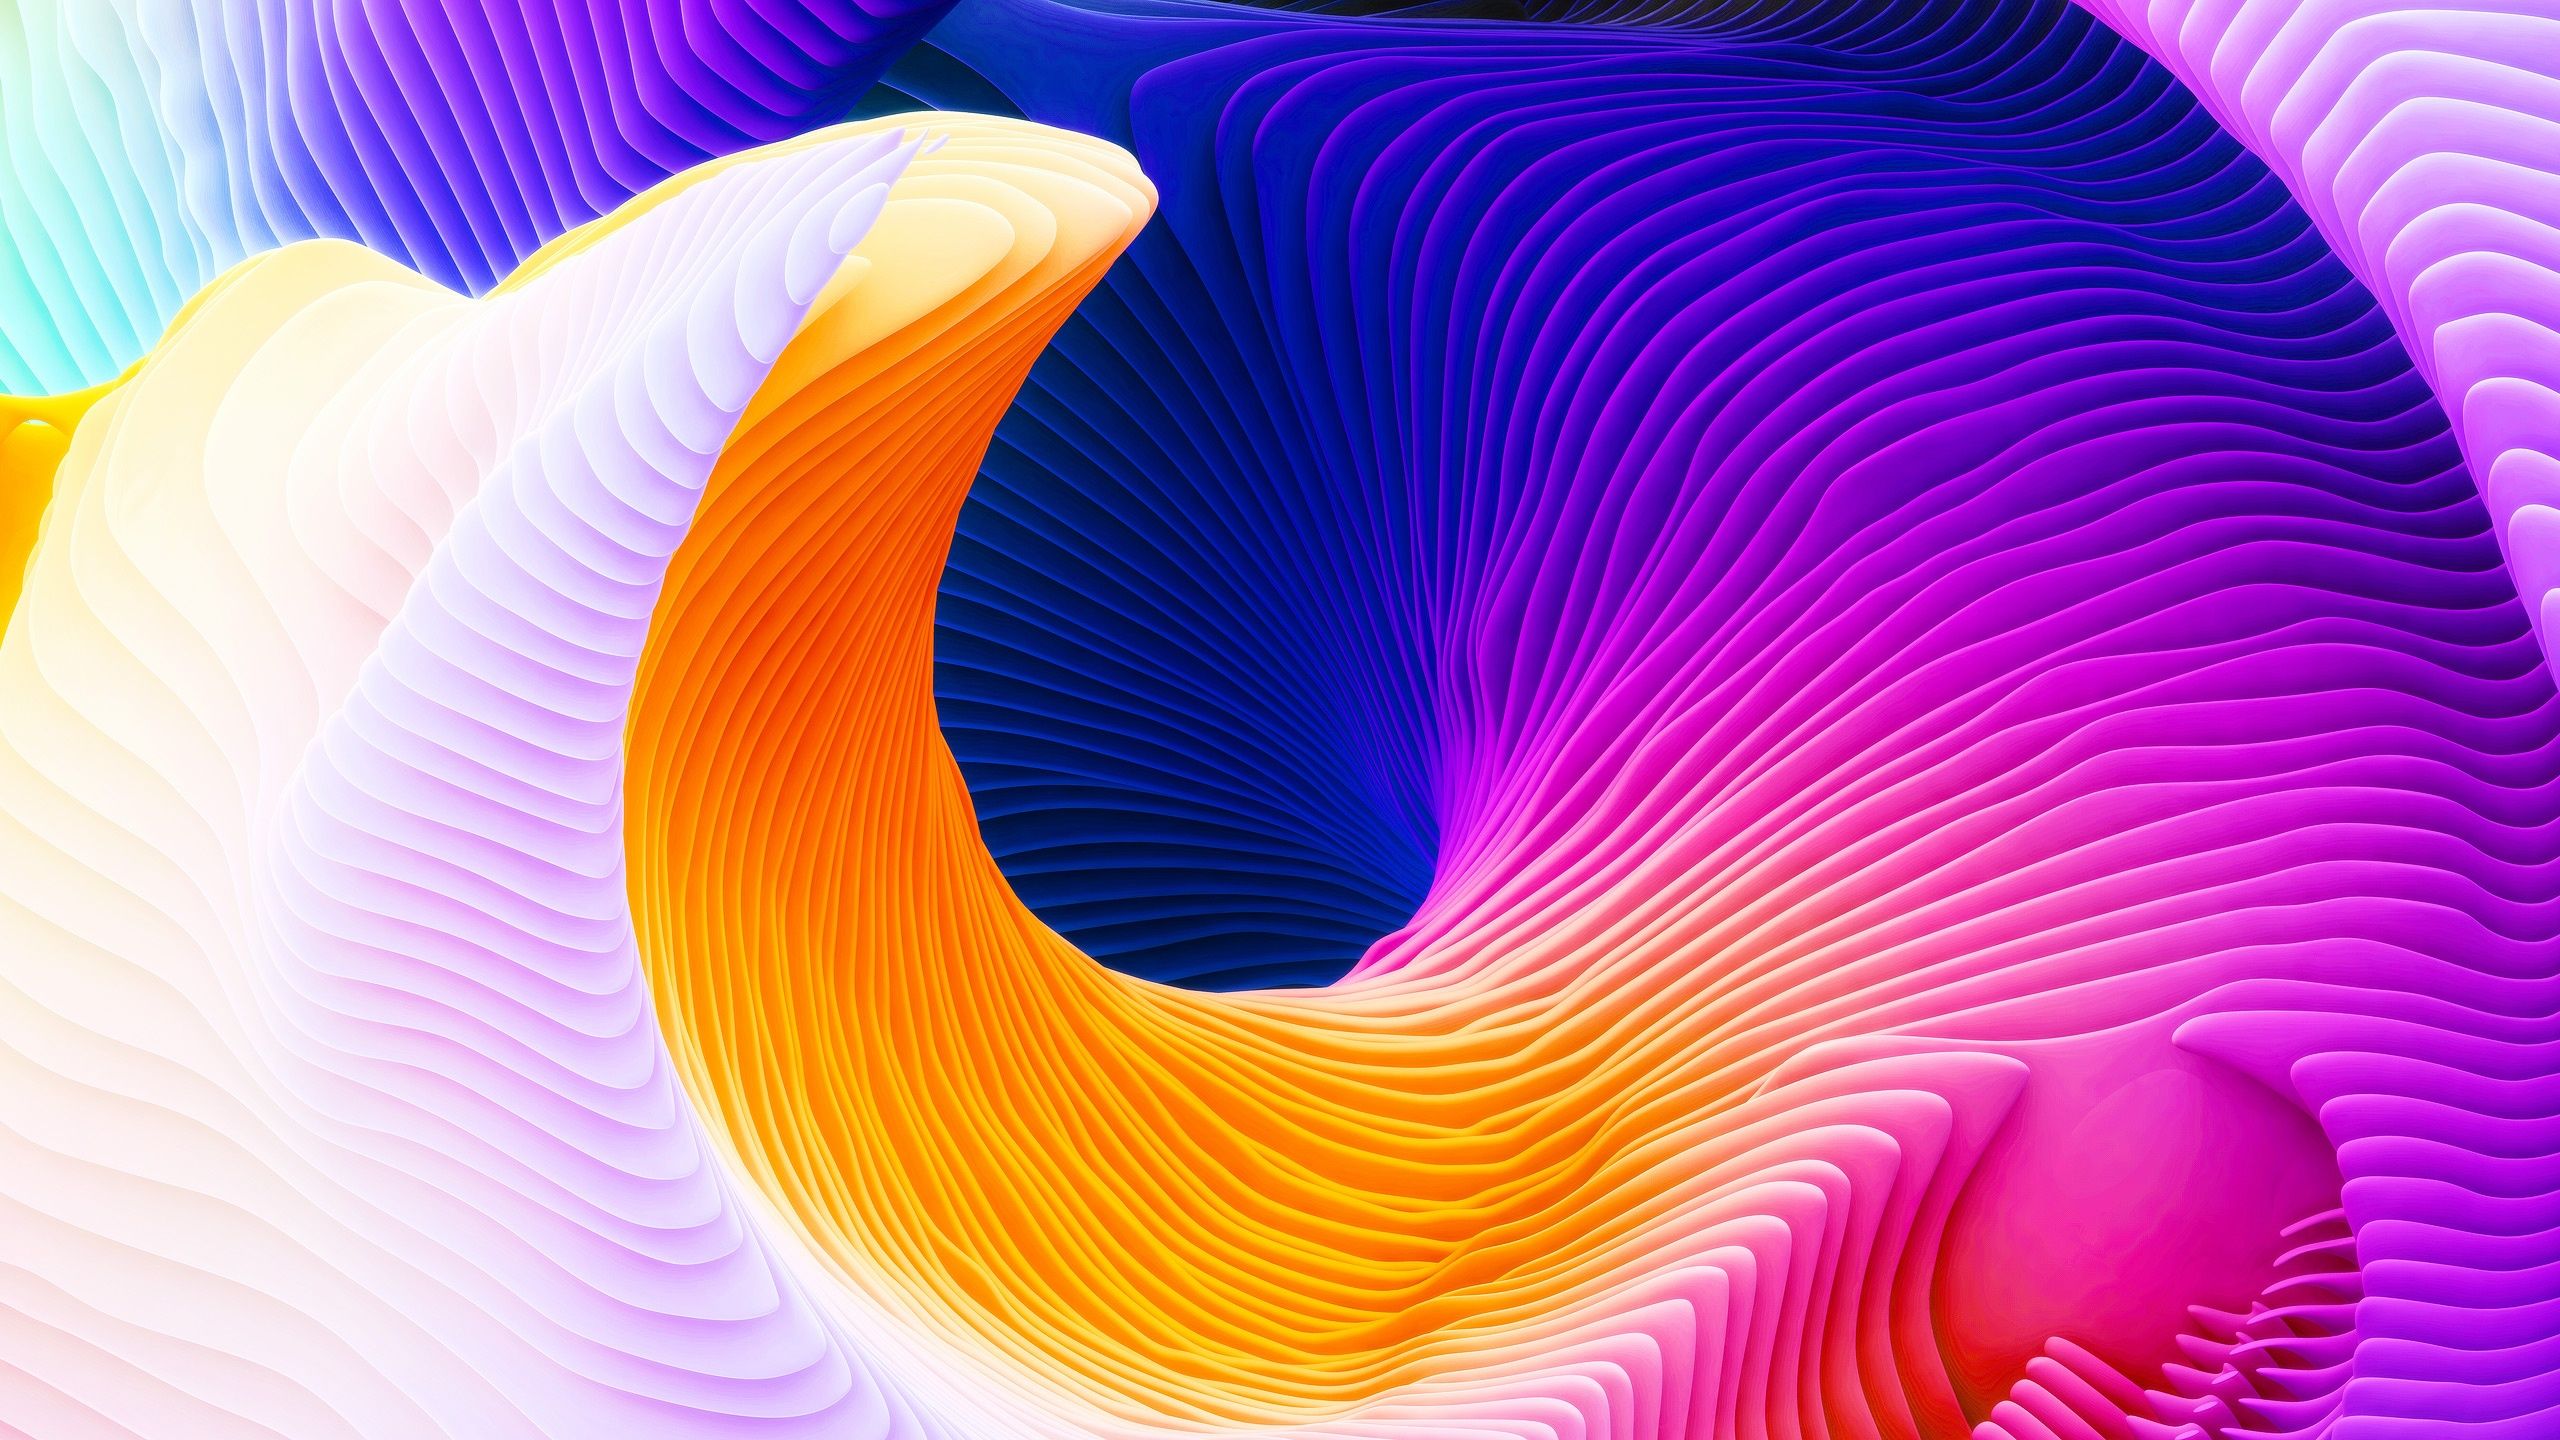 3D Abstract Spiral Wallpapers en formato jpg para descarga gratuita